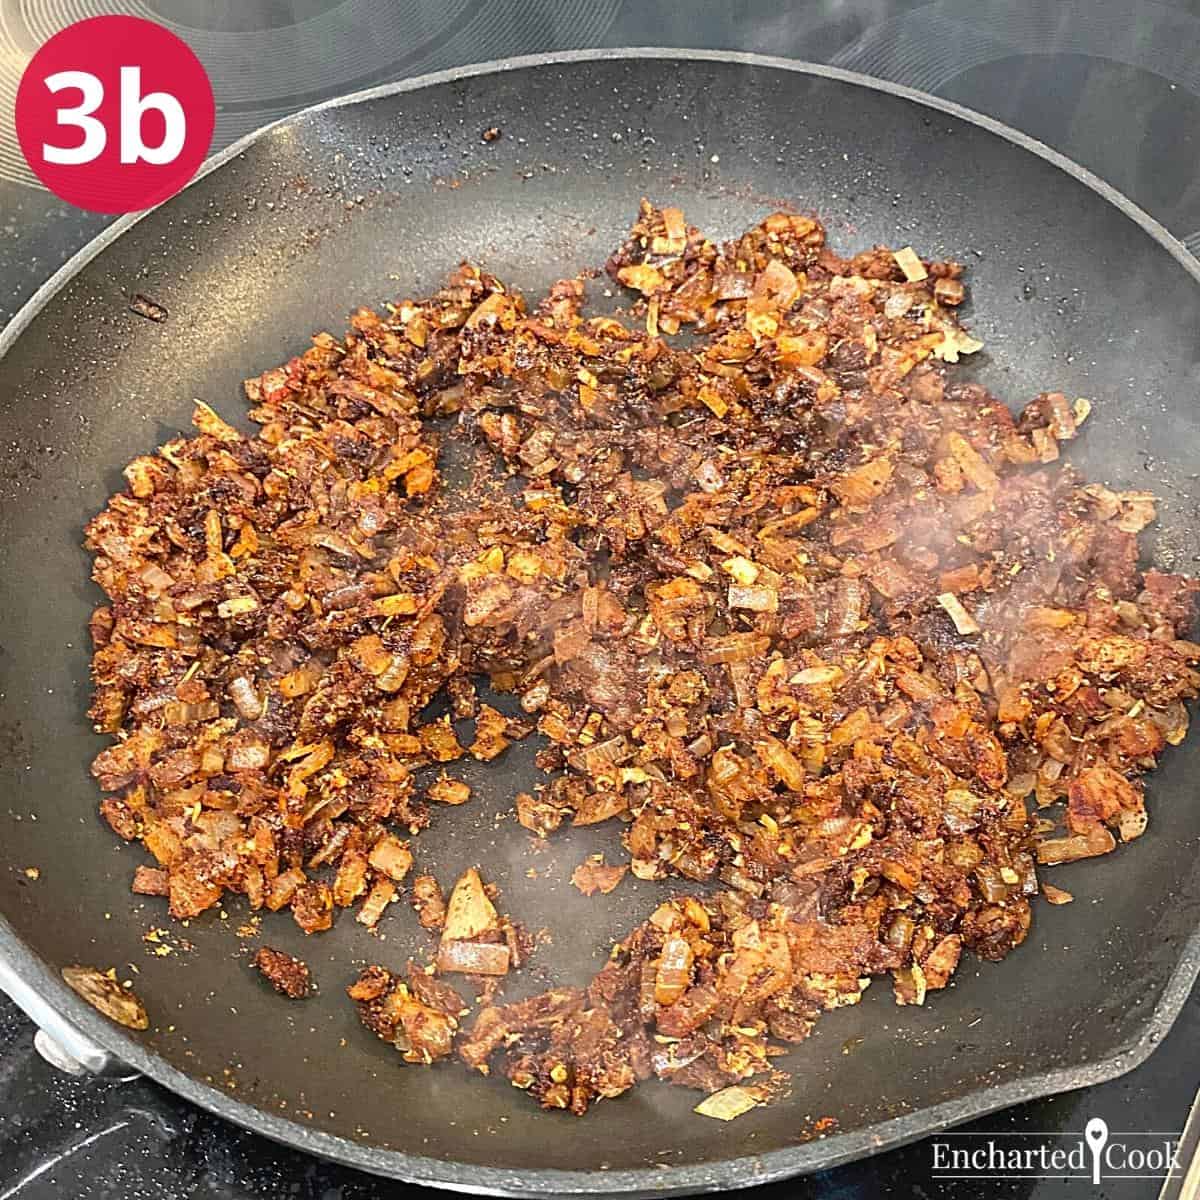 Step 3 - Slow Cooker Chili Process Photo 3b.